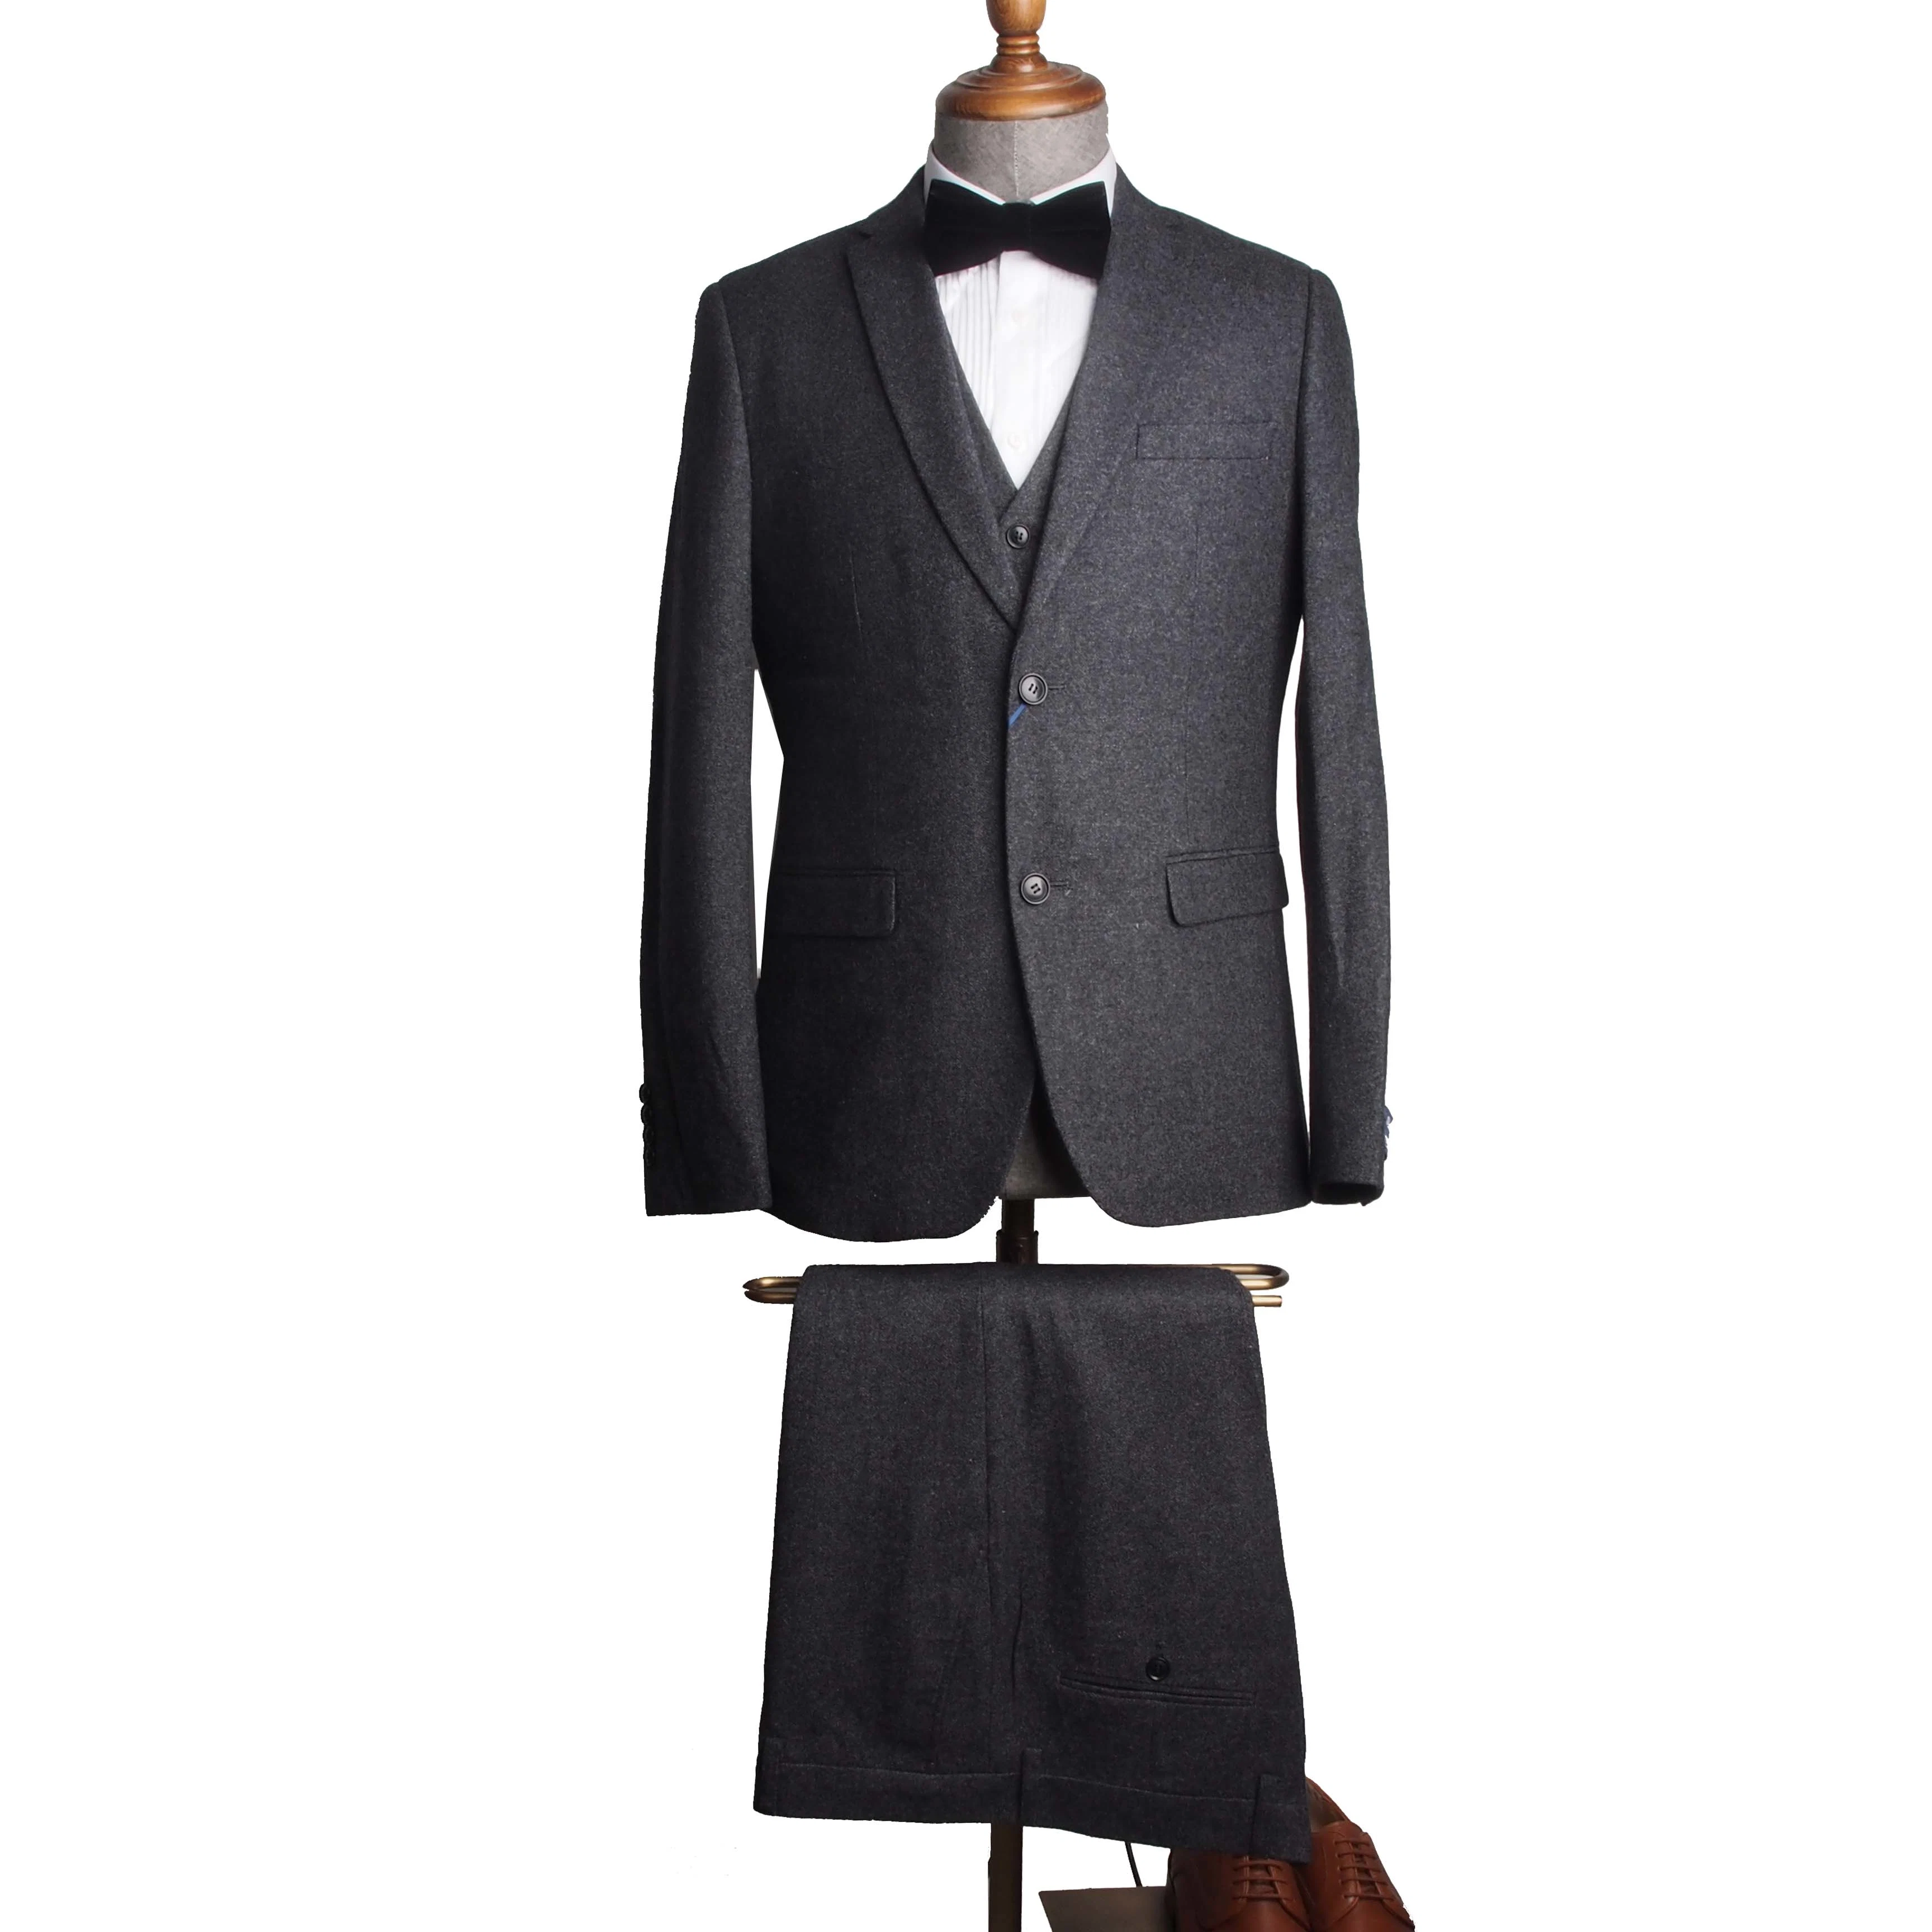 Maßgeschneiderte Mode Kleidung Bekleidung Smoking Herren Anzug Hochzeitsanzug